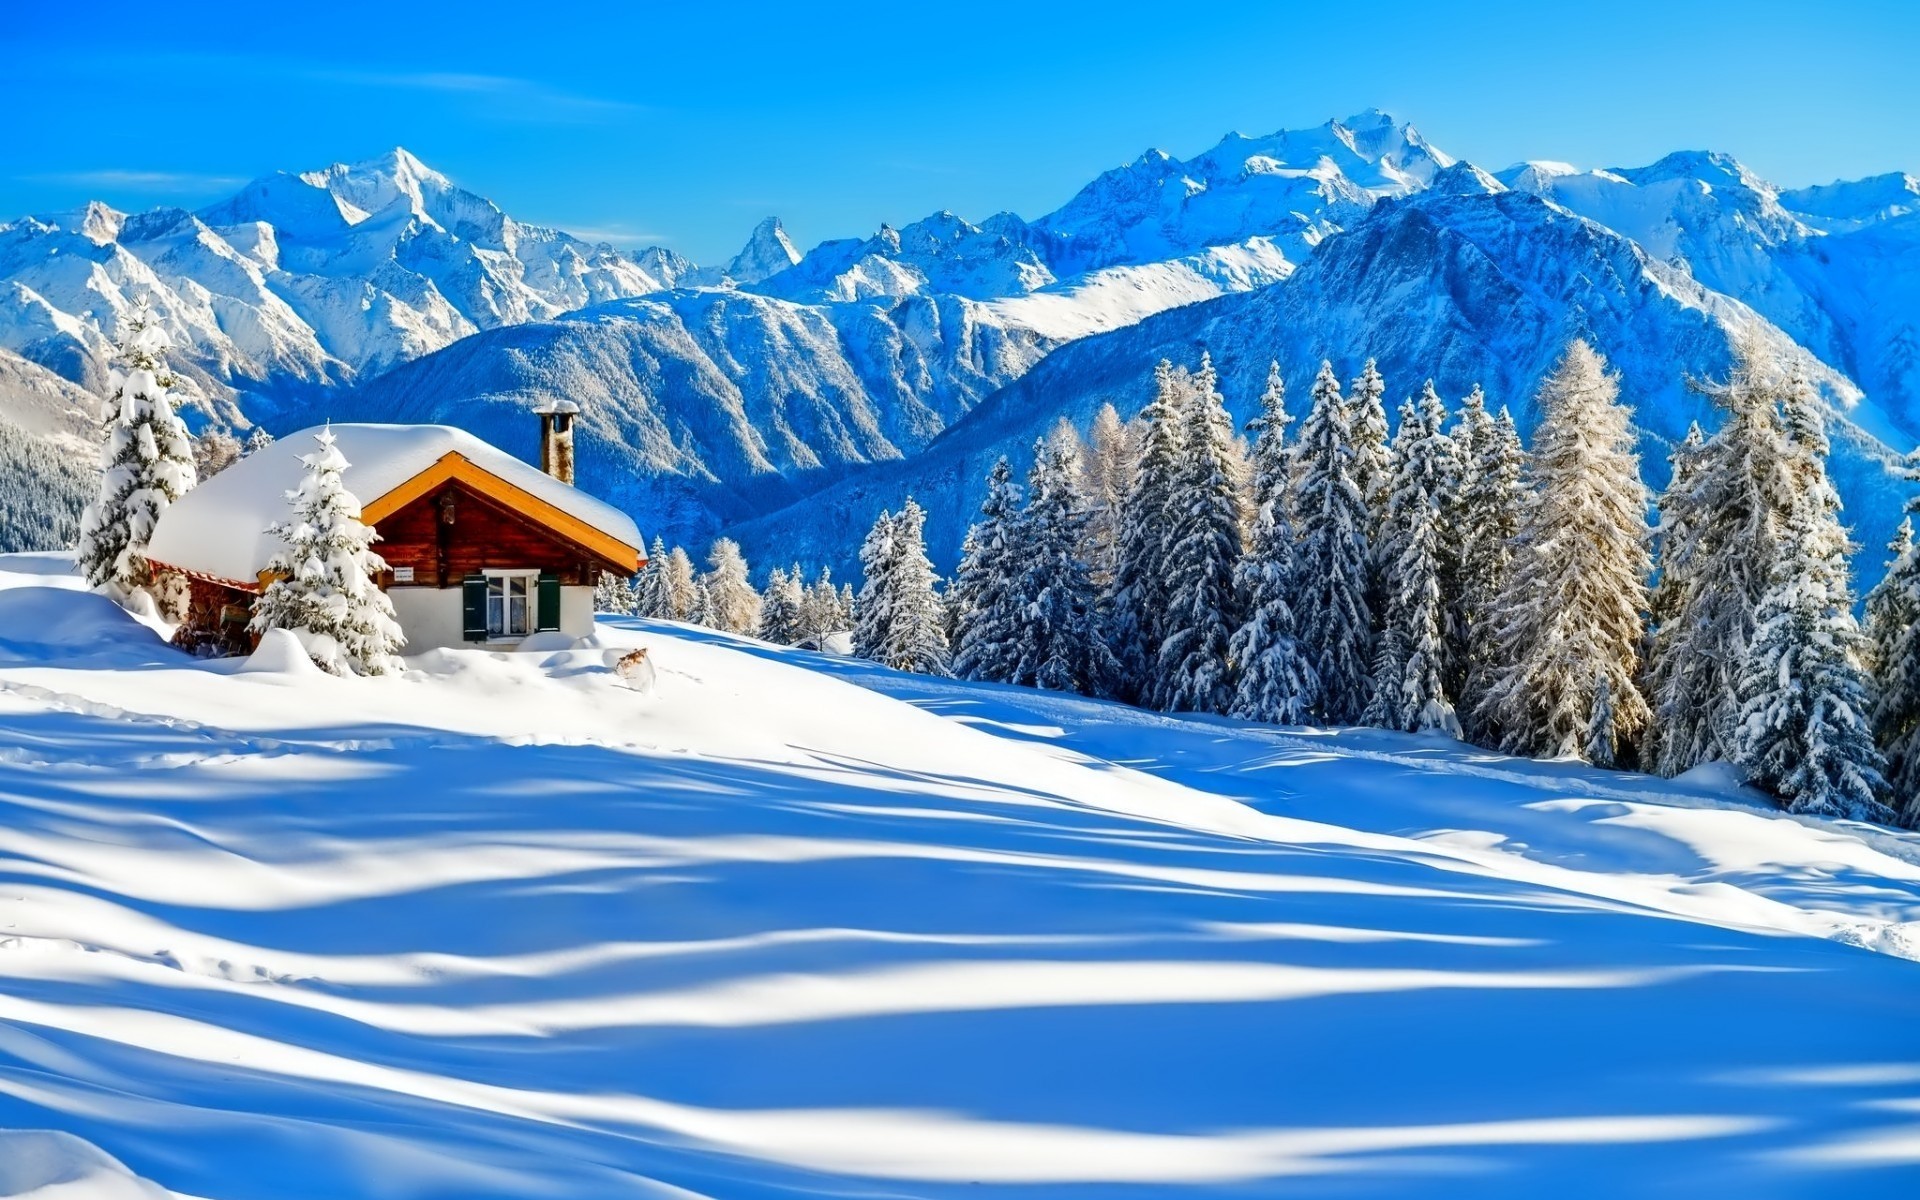 зима снег горы холодная лед курорт древесины горный пик альпийская шале живописный снежное избушка мороз горнолыжный курорт замороженные лес пейзаж зимний пейзаж